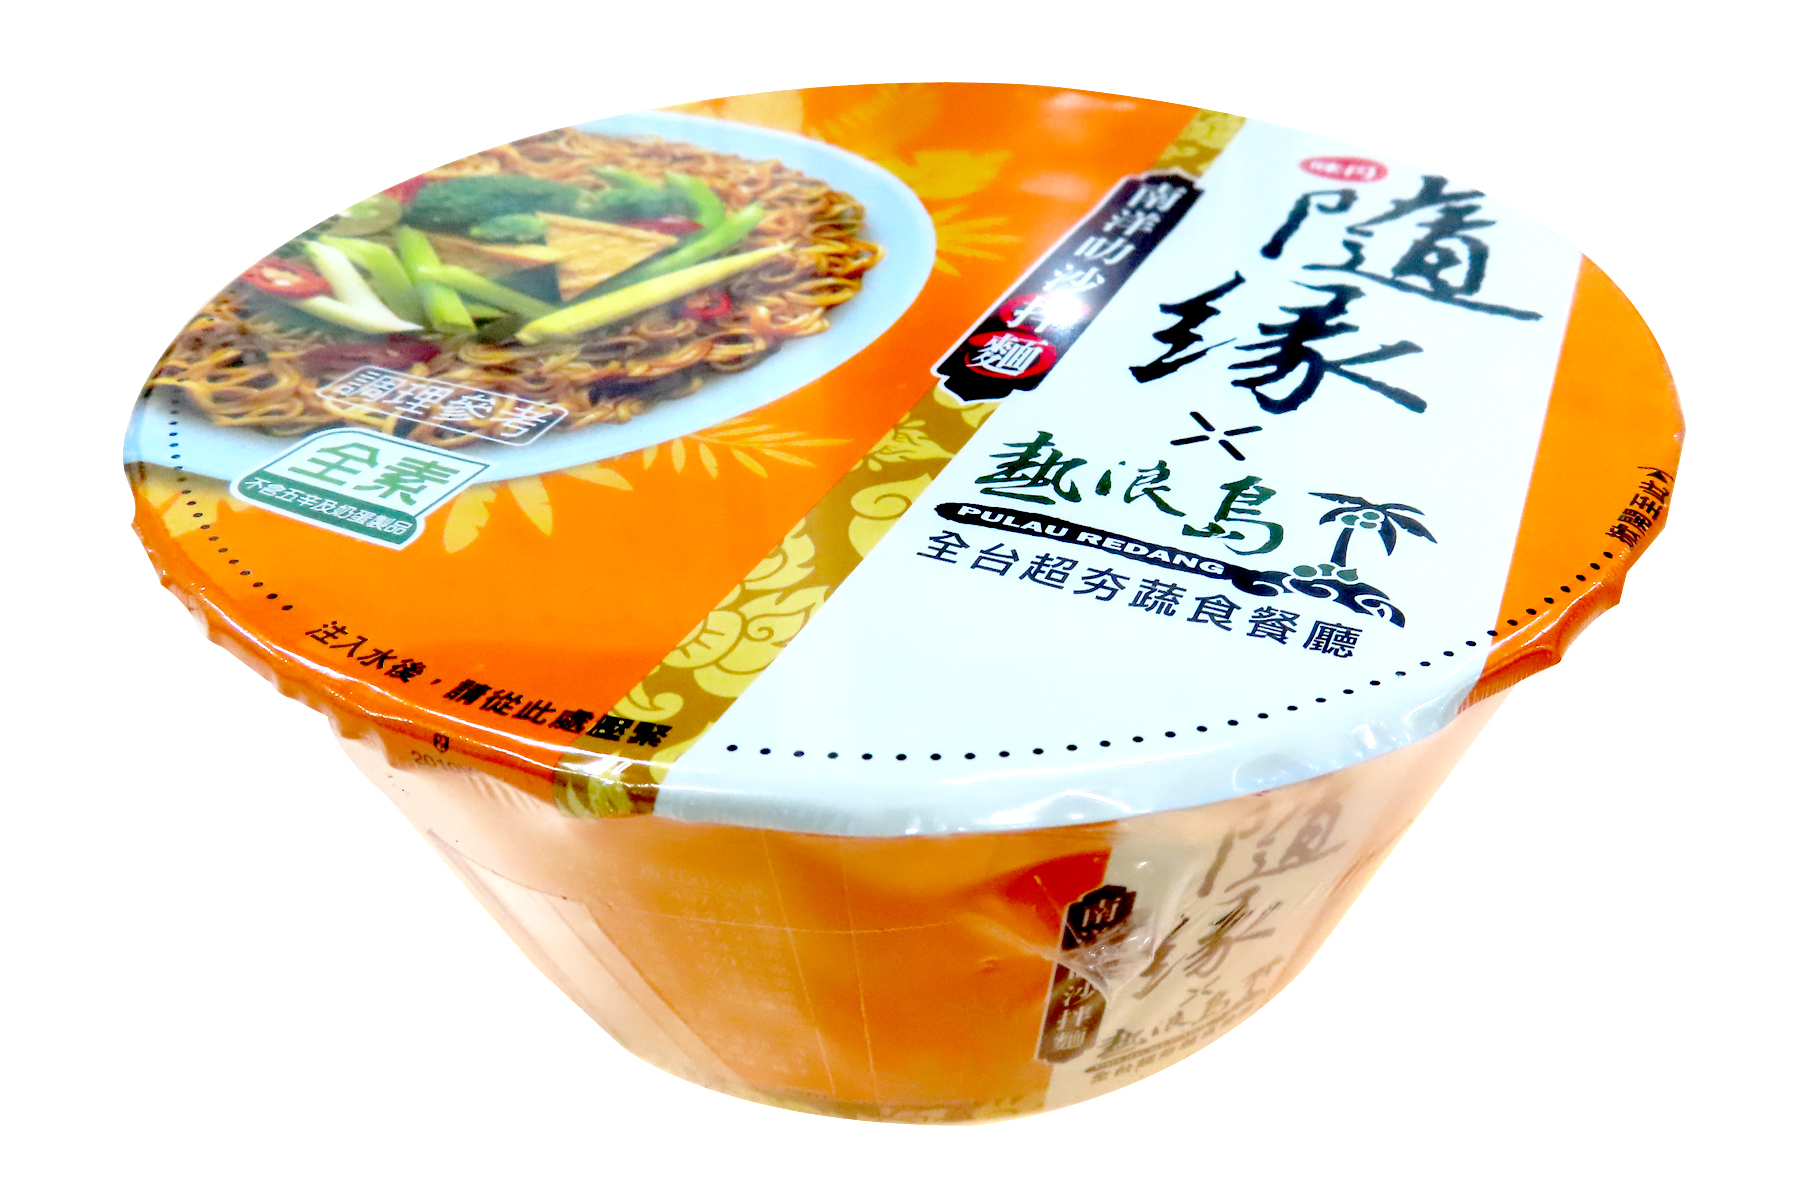 Image Vedan Dry Noodle with Laksa Sauce 随缘 - 南洋叻沙拌面 (碗） 98grams